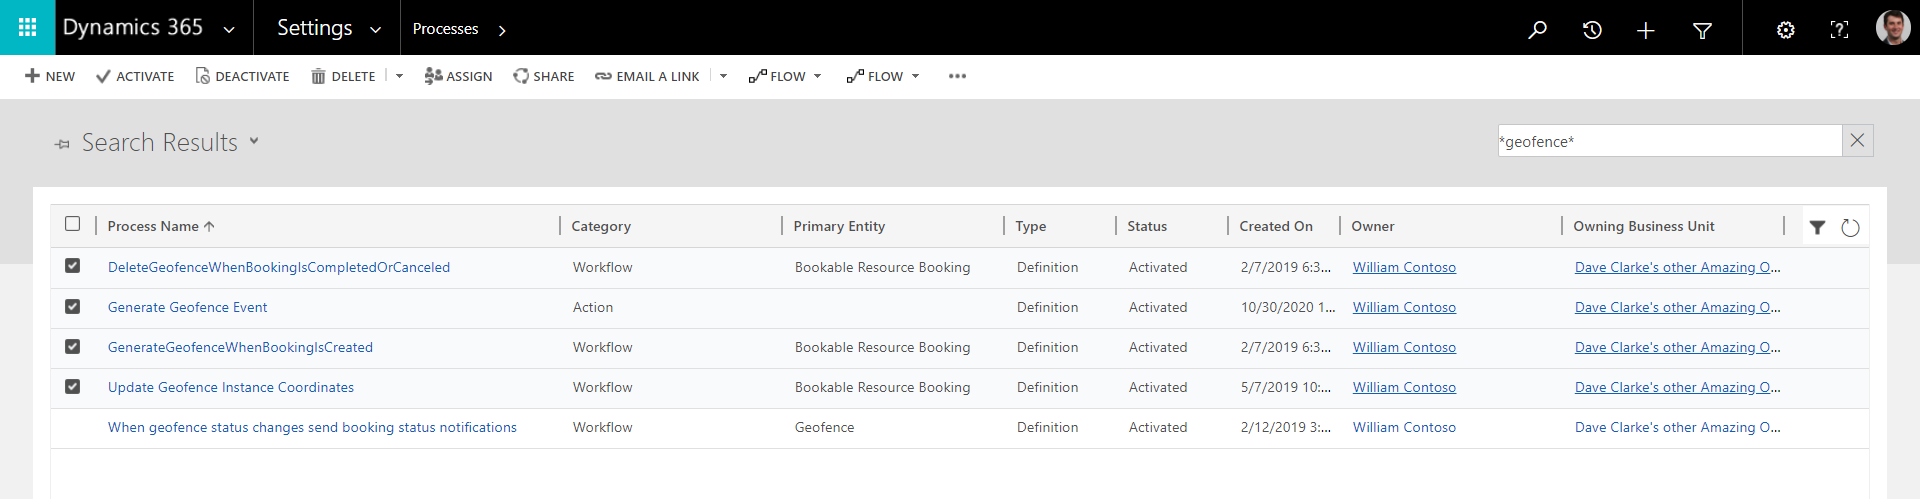 Captura de tela das configurações do Field Service, mostrando uma lista de processos.